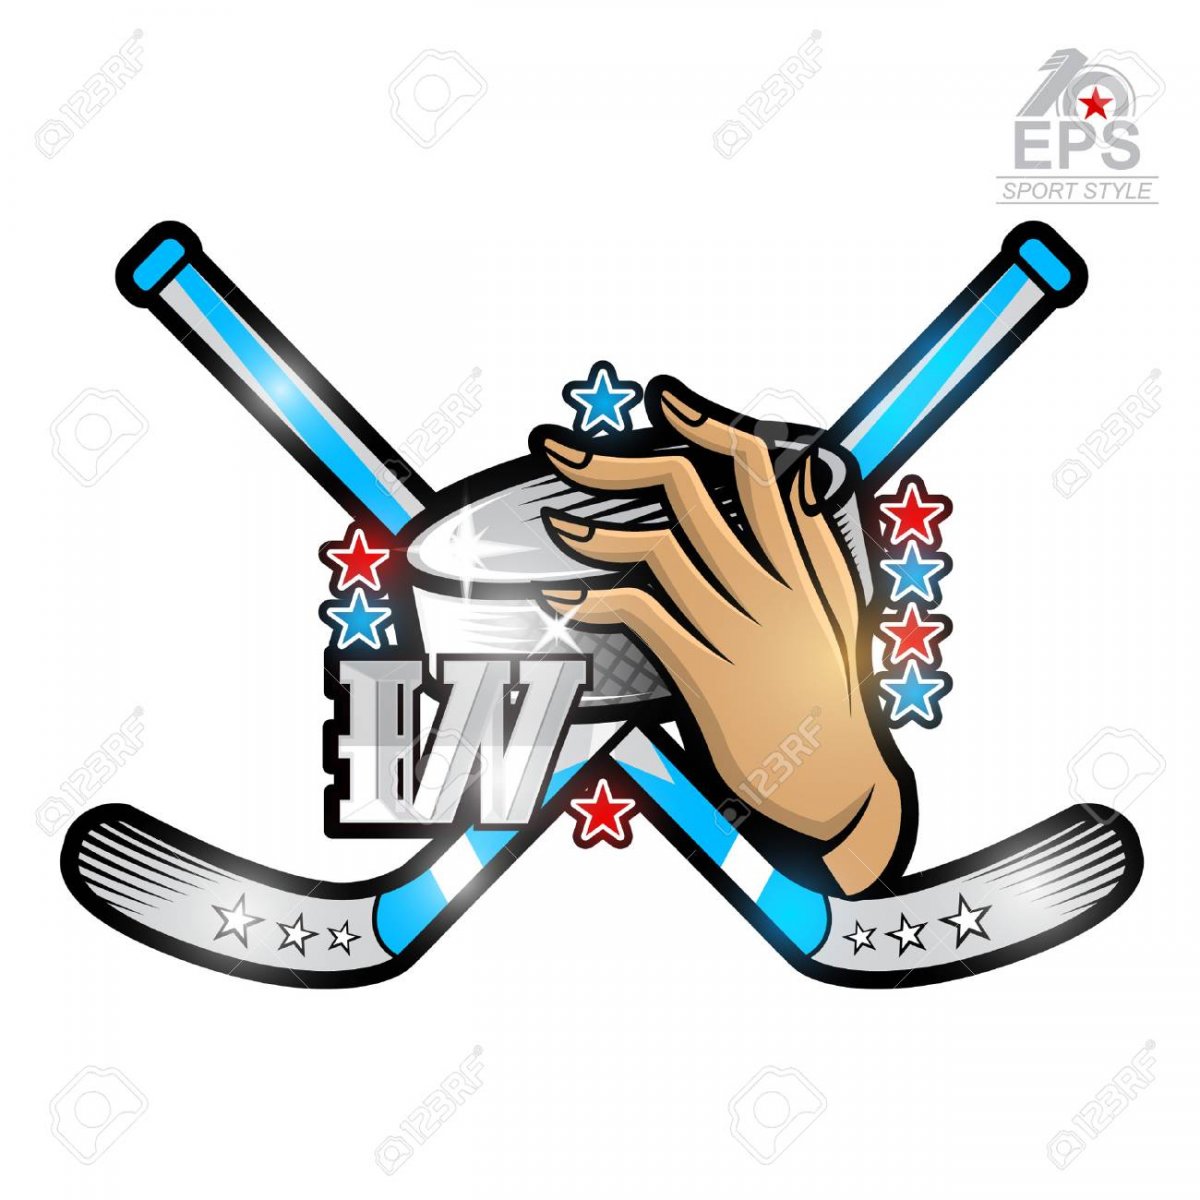 Ice Hockey logo